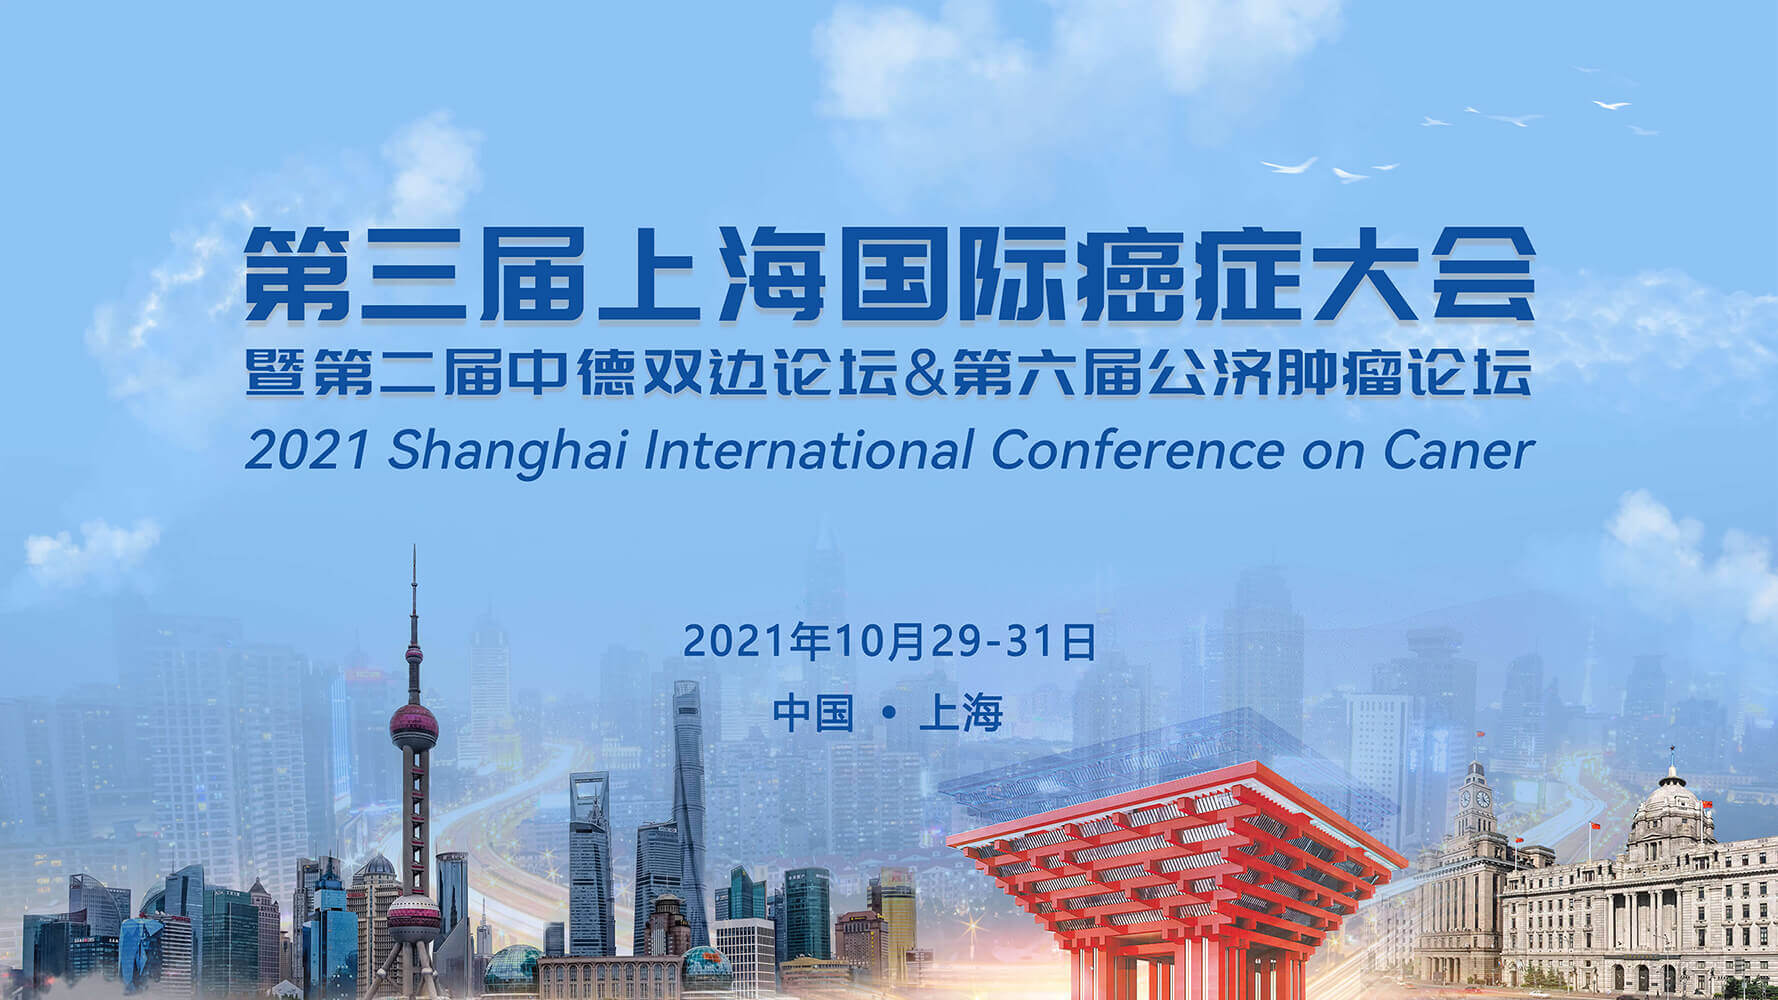 会议通知 | 华测艾普邀您共赴第三届上海国际癌症大会